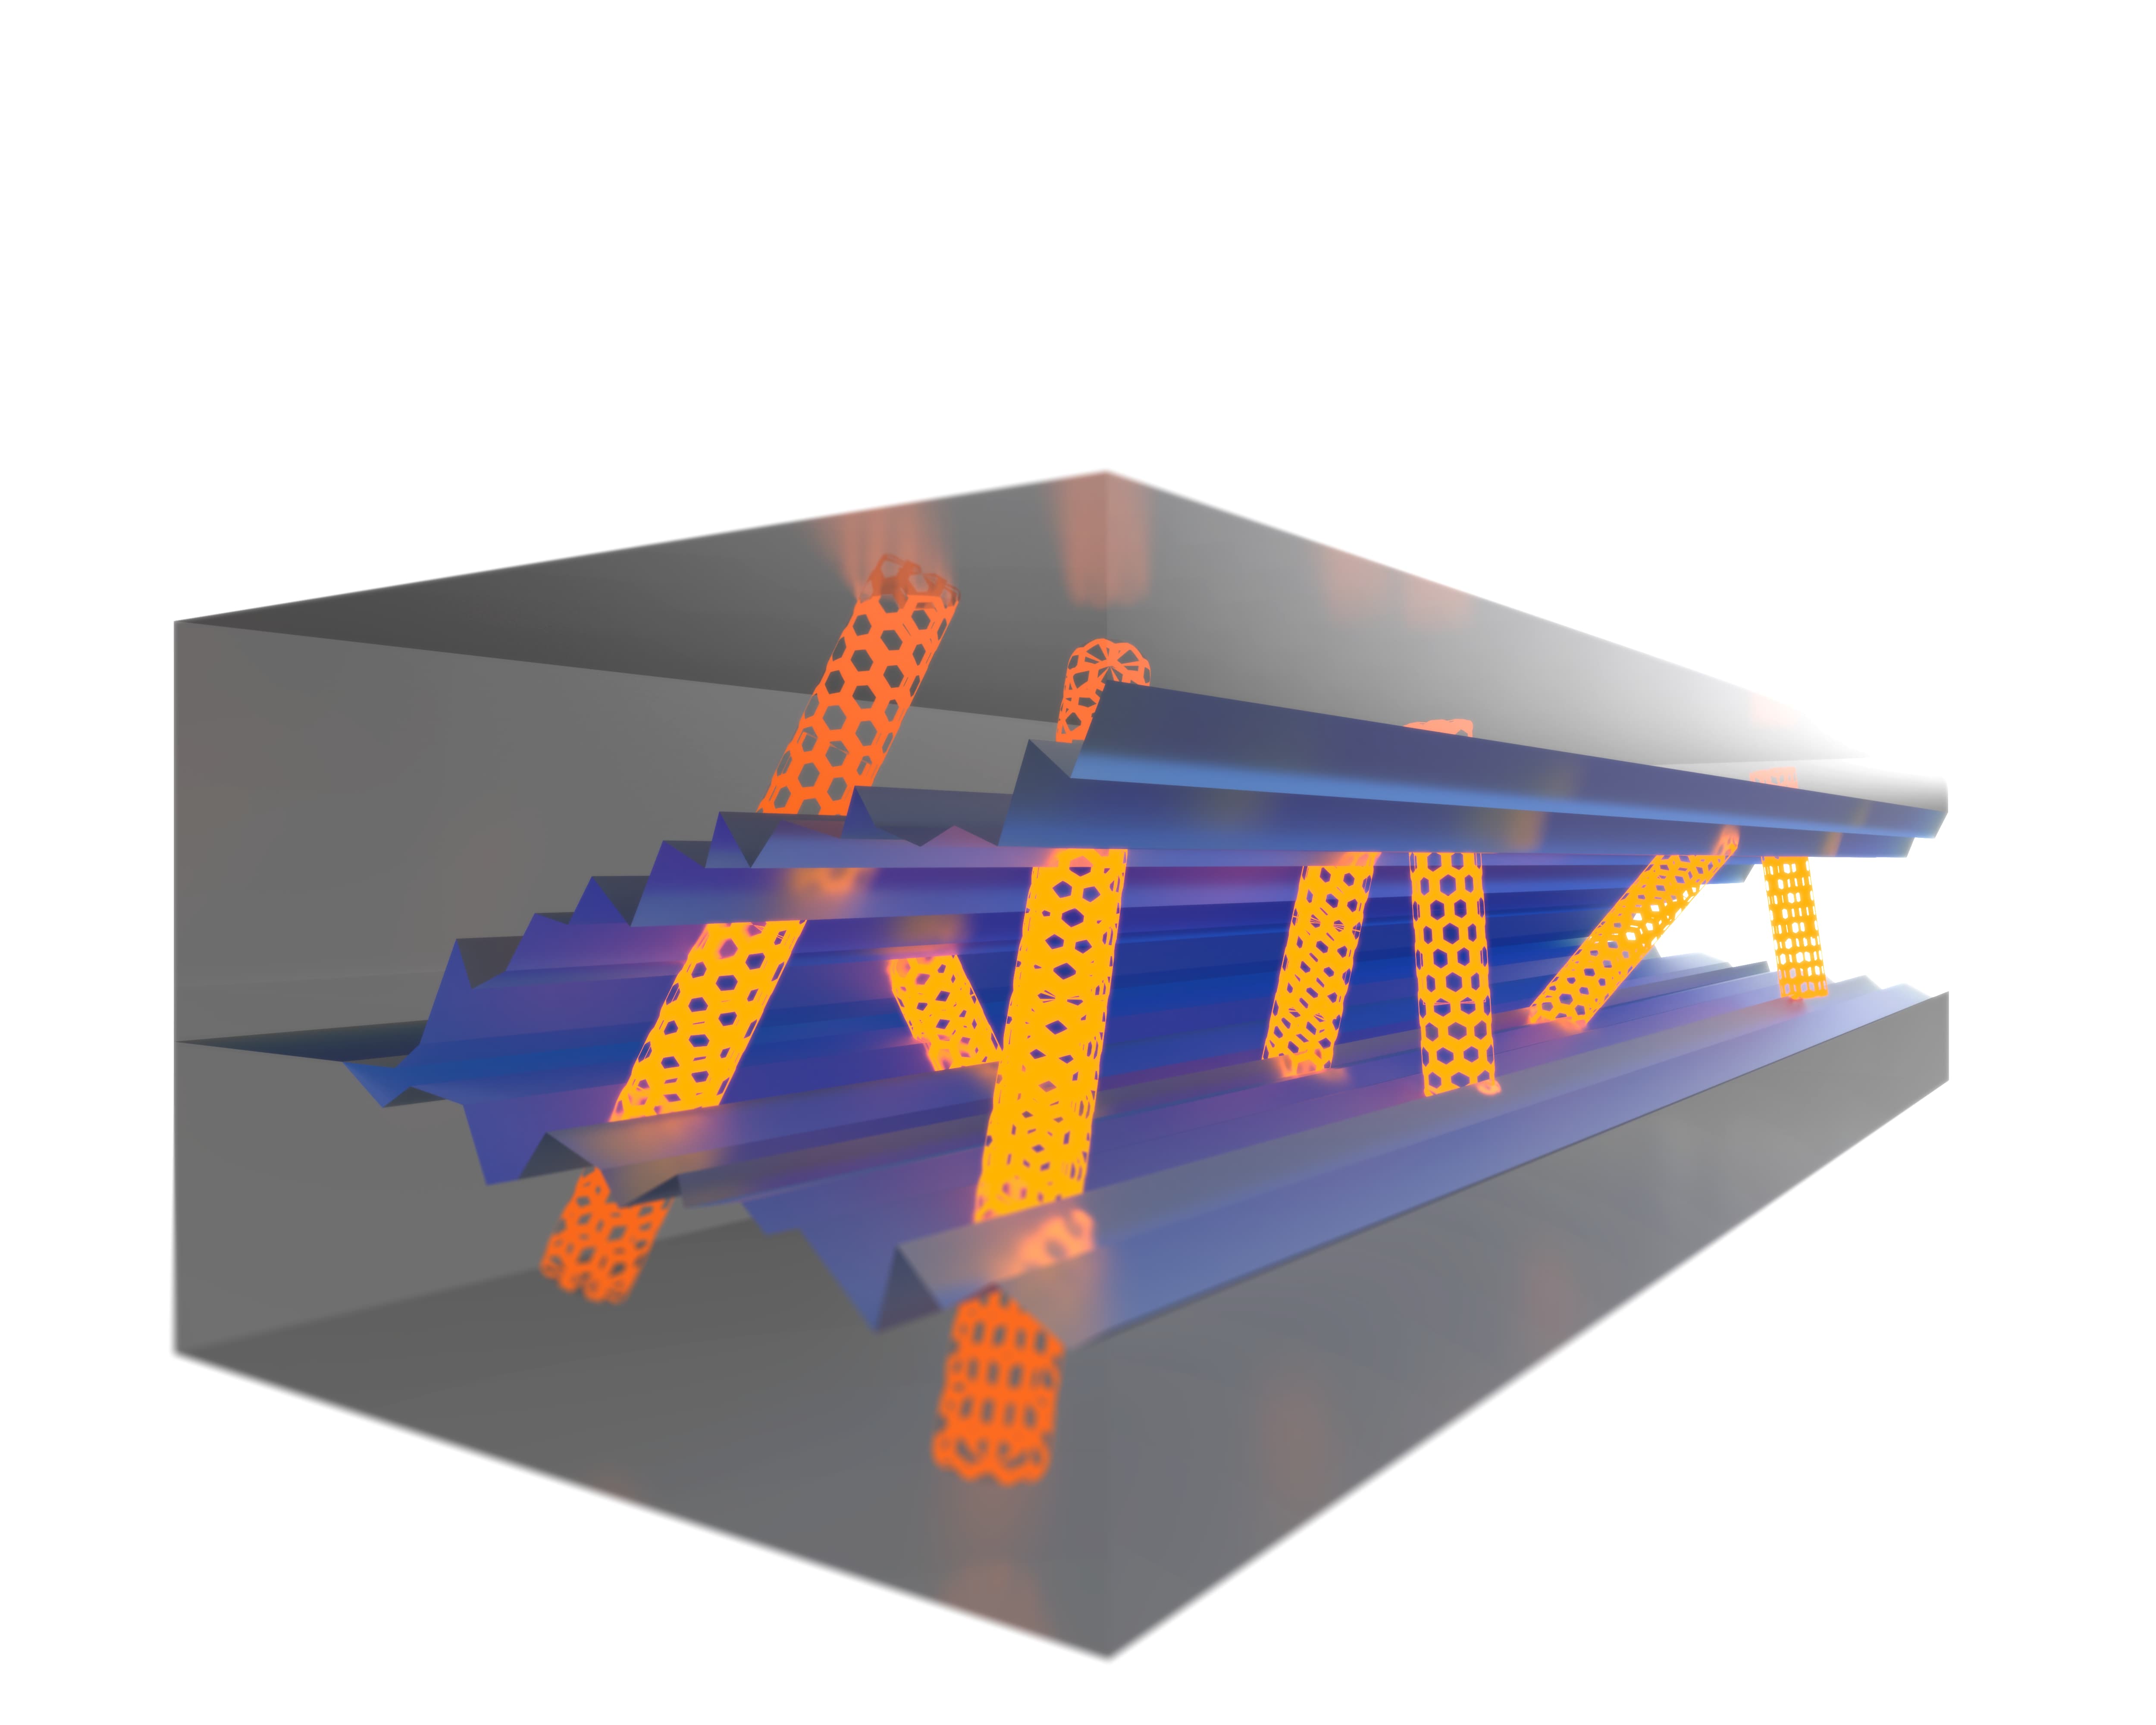 Les nanotubes renforcent la matrice et empêchent une défaillance soudaine du composant